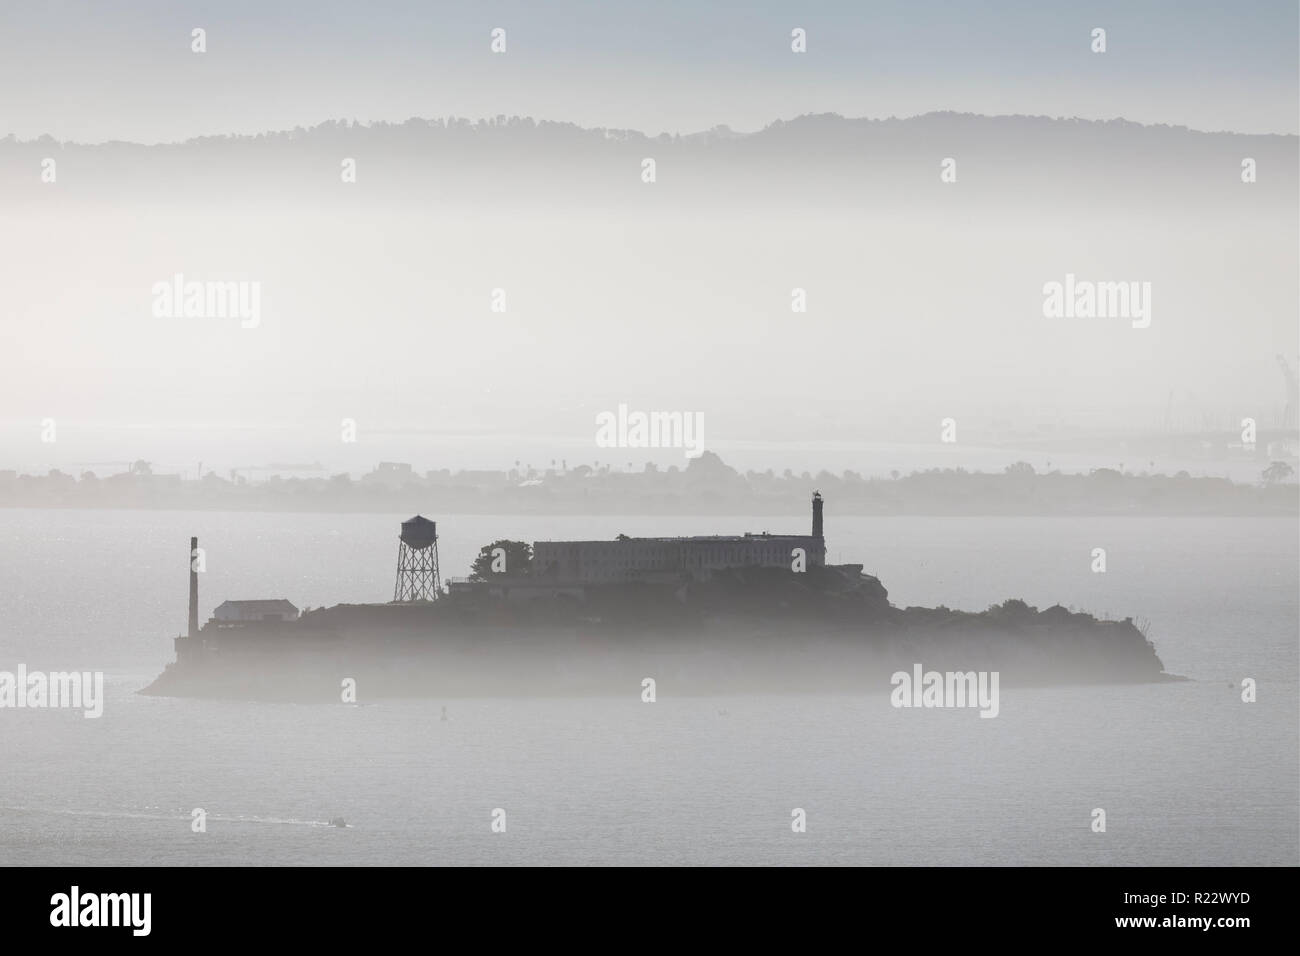 Alcatraz, nella famigerata prigione di un'isola con lo stesso nome è visto da lontano in una nebbia la Baia di San Francisco. Foto Stock